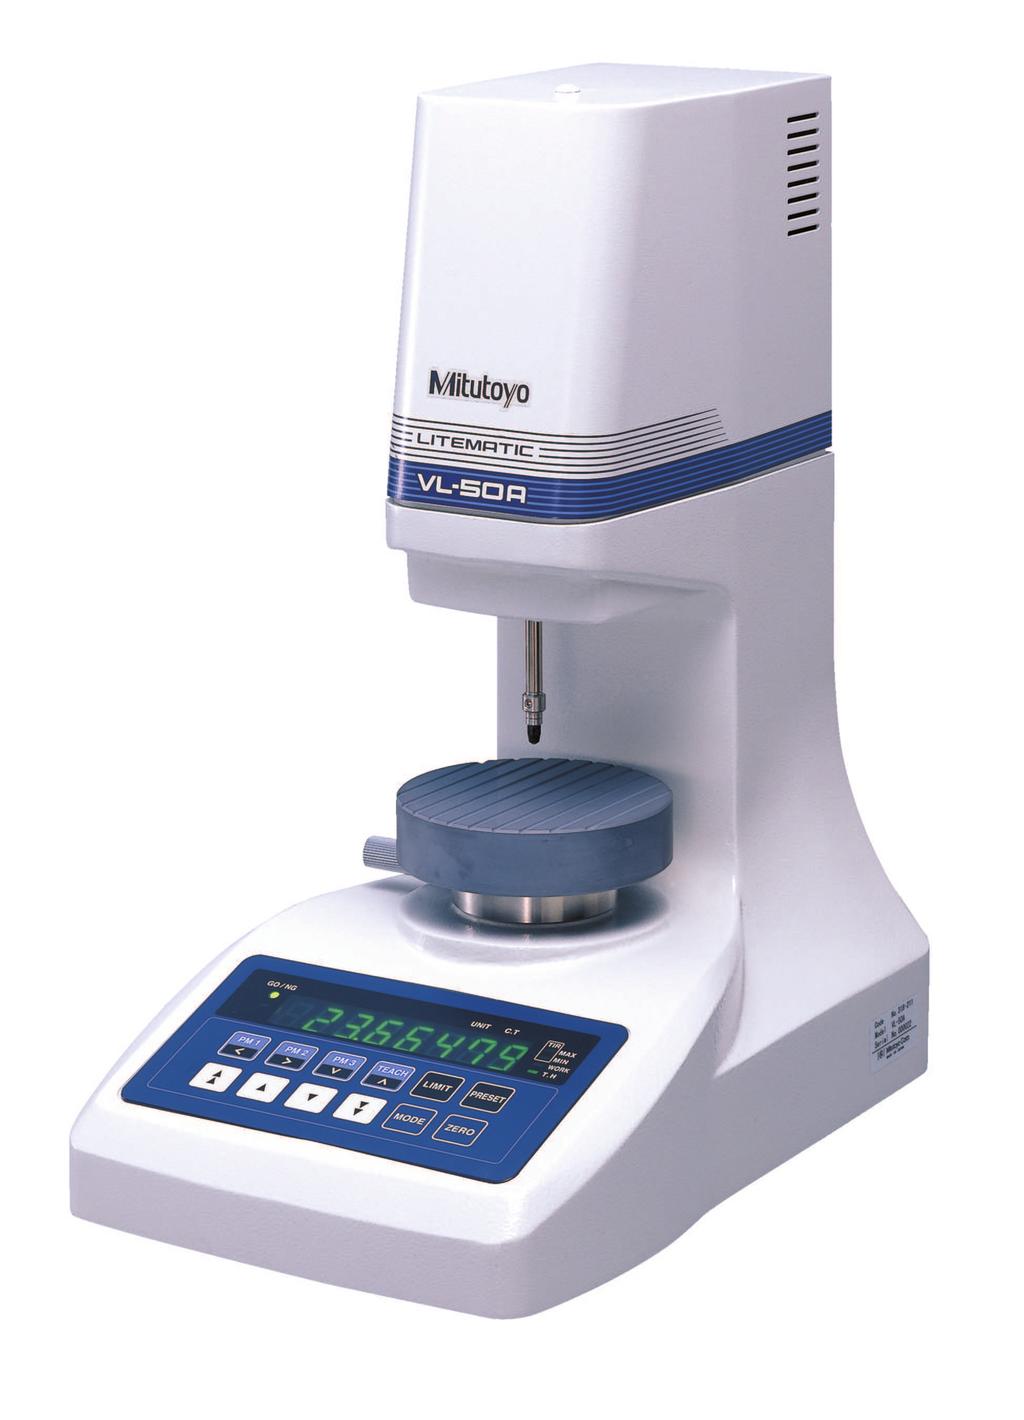 I/O Seria 318 Wysokiej precyzji, bezpieczne i łatwe w obsłudze urządzenie pomiarowe LITEMATIC VL-5 posiada następujące zalety: Nacisk pomiarowy,1 N (1 gf) i rozdzielczość,1 µm.